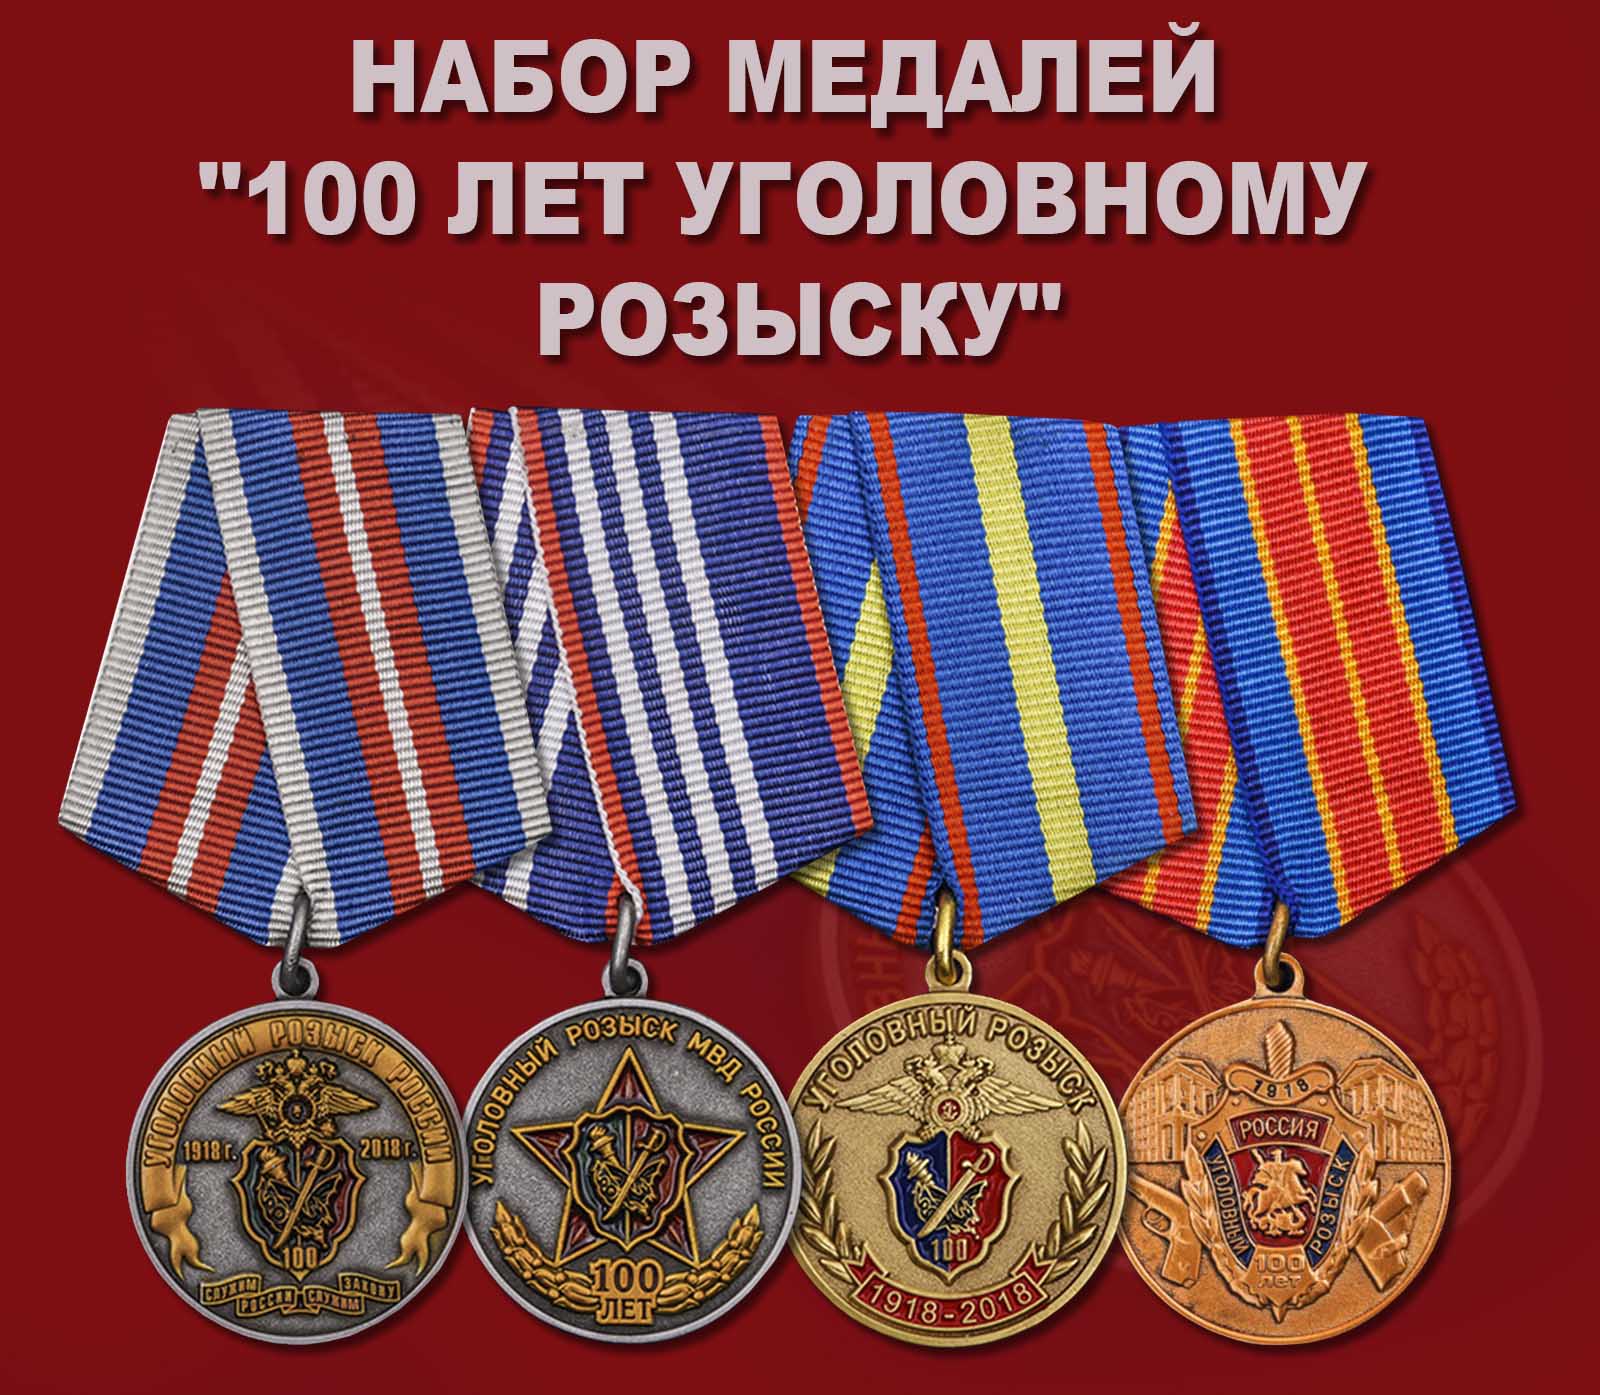 Купить набор медалей "100 лет Уголовному розыску"